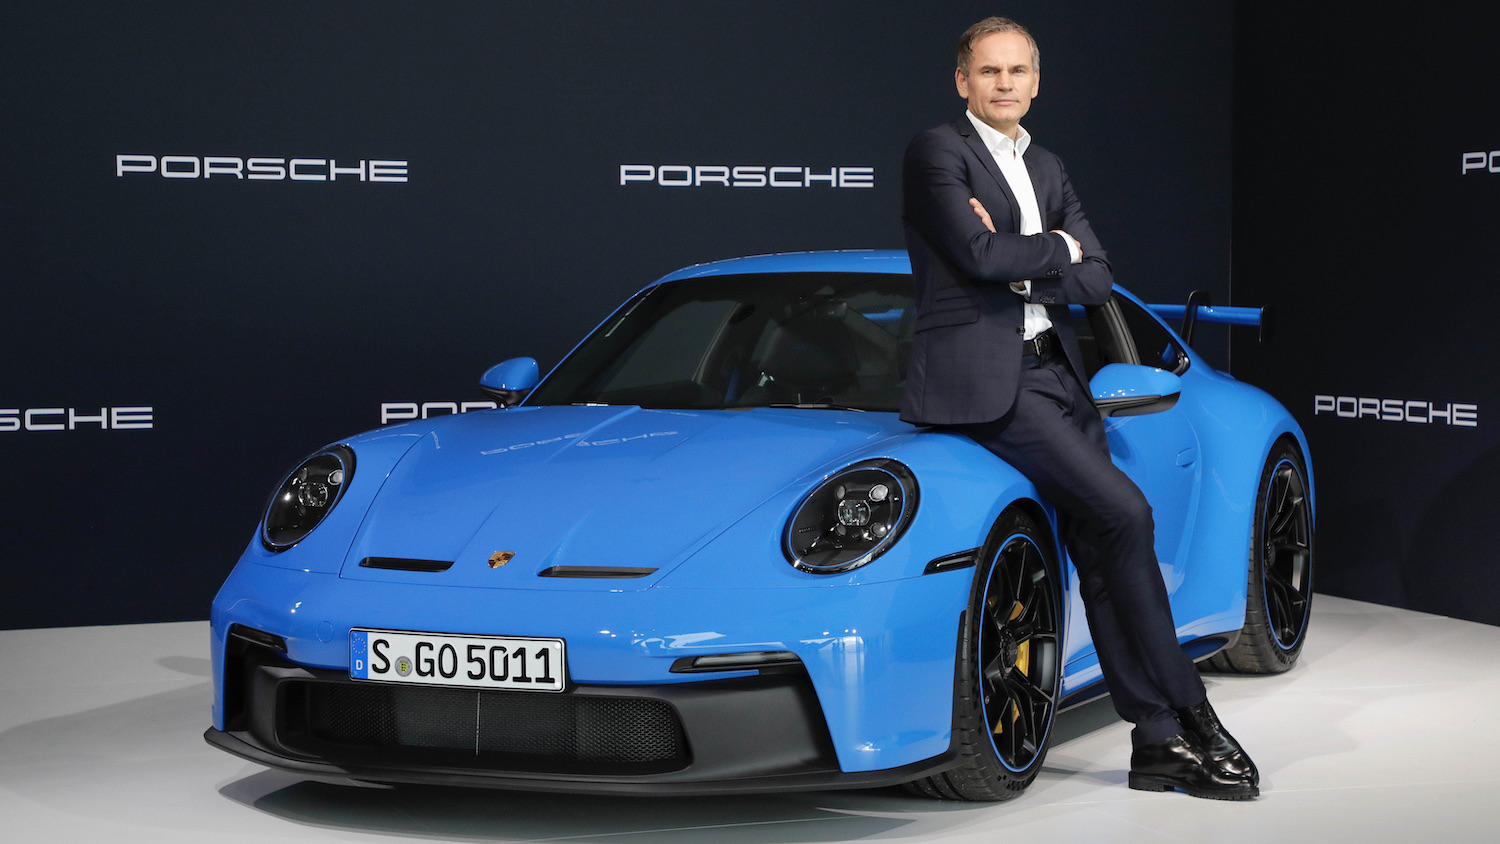 Le patron de Porsche est maintenant le patron de Volkswagen